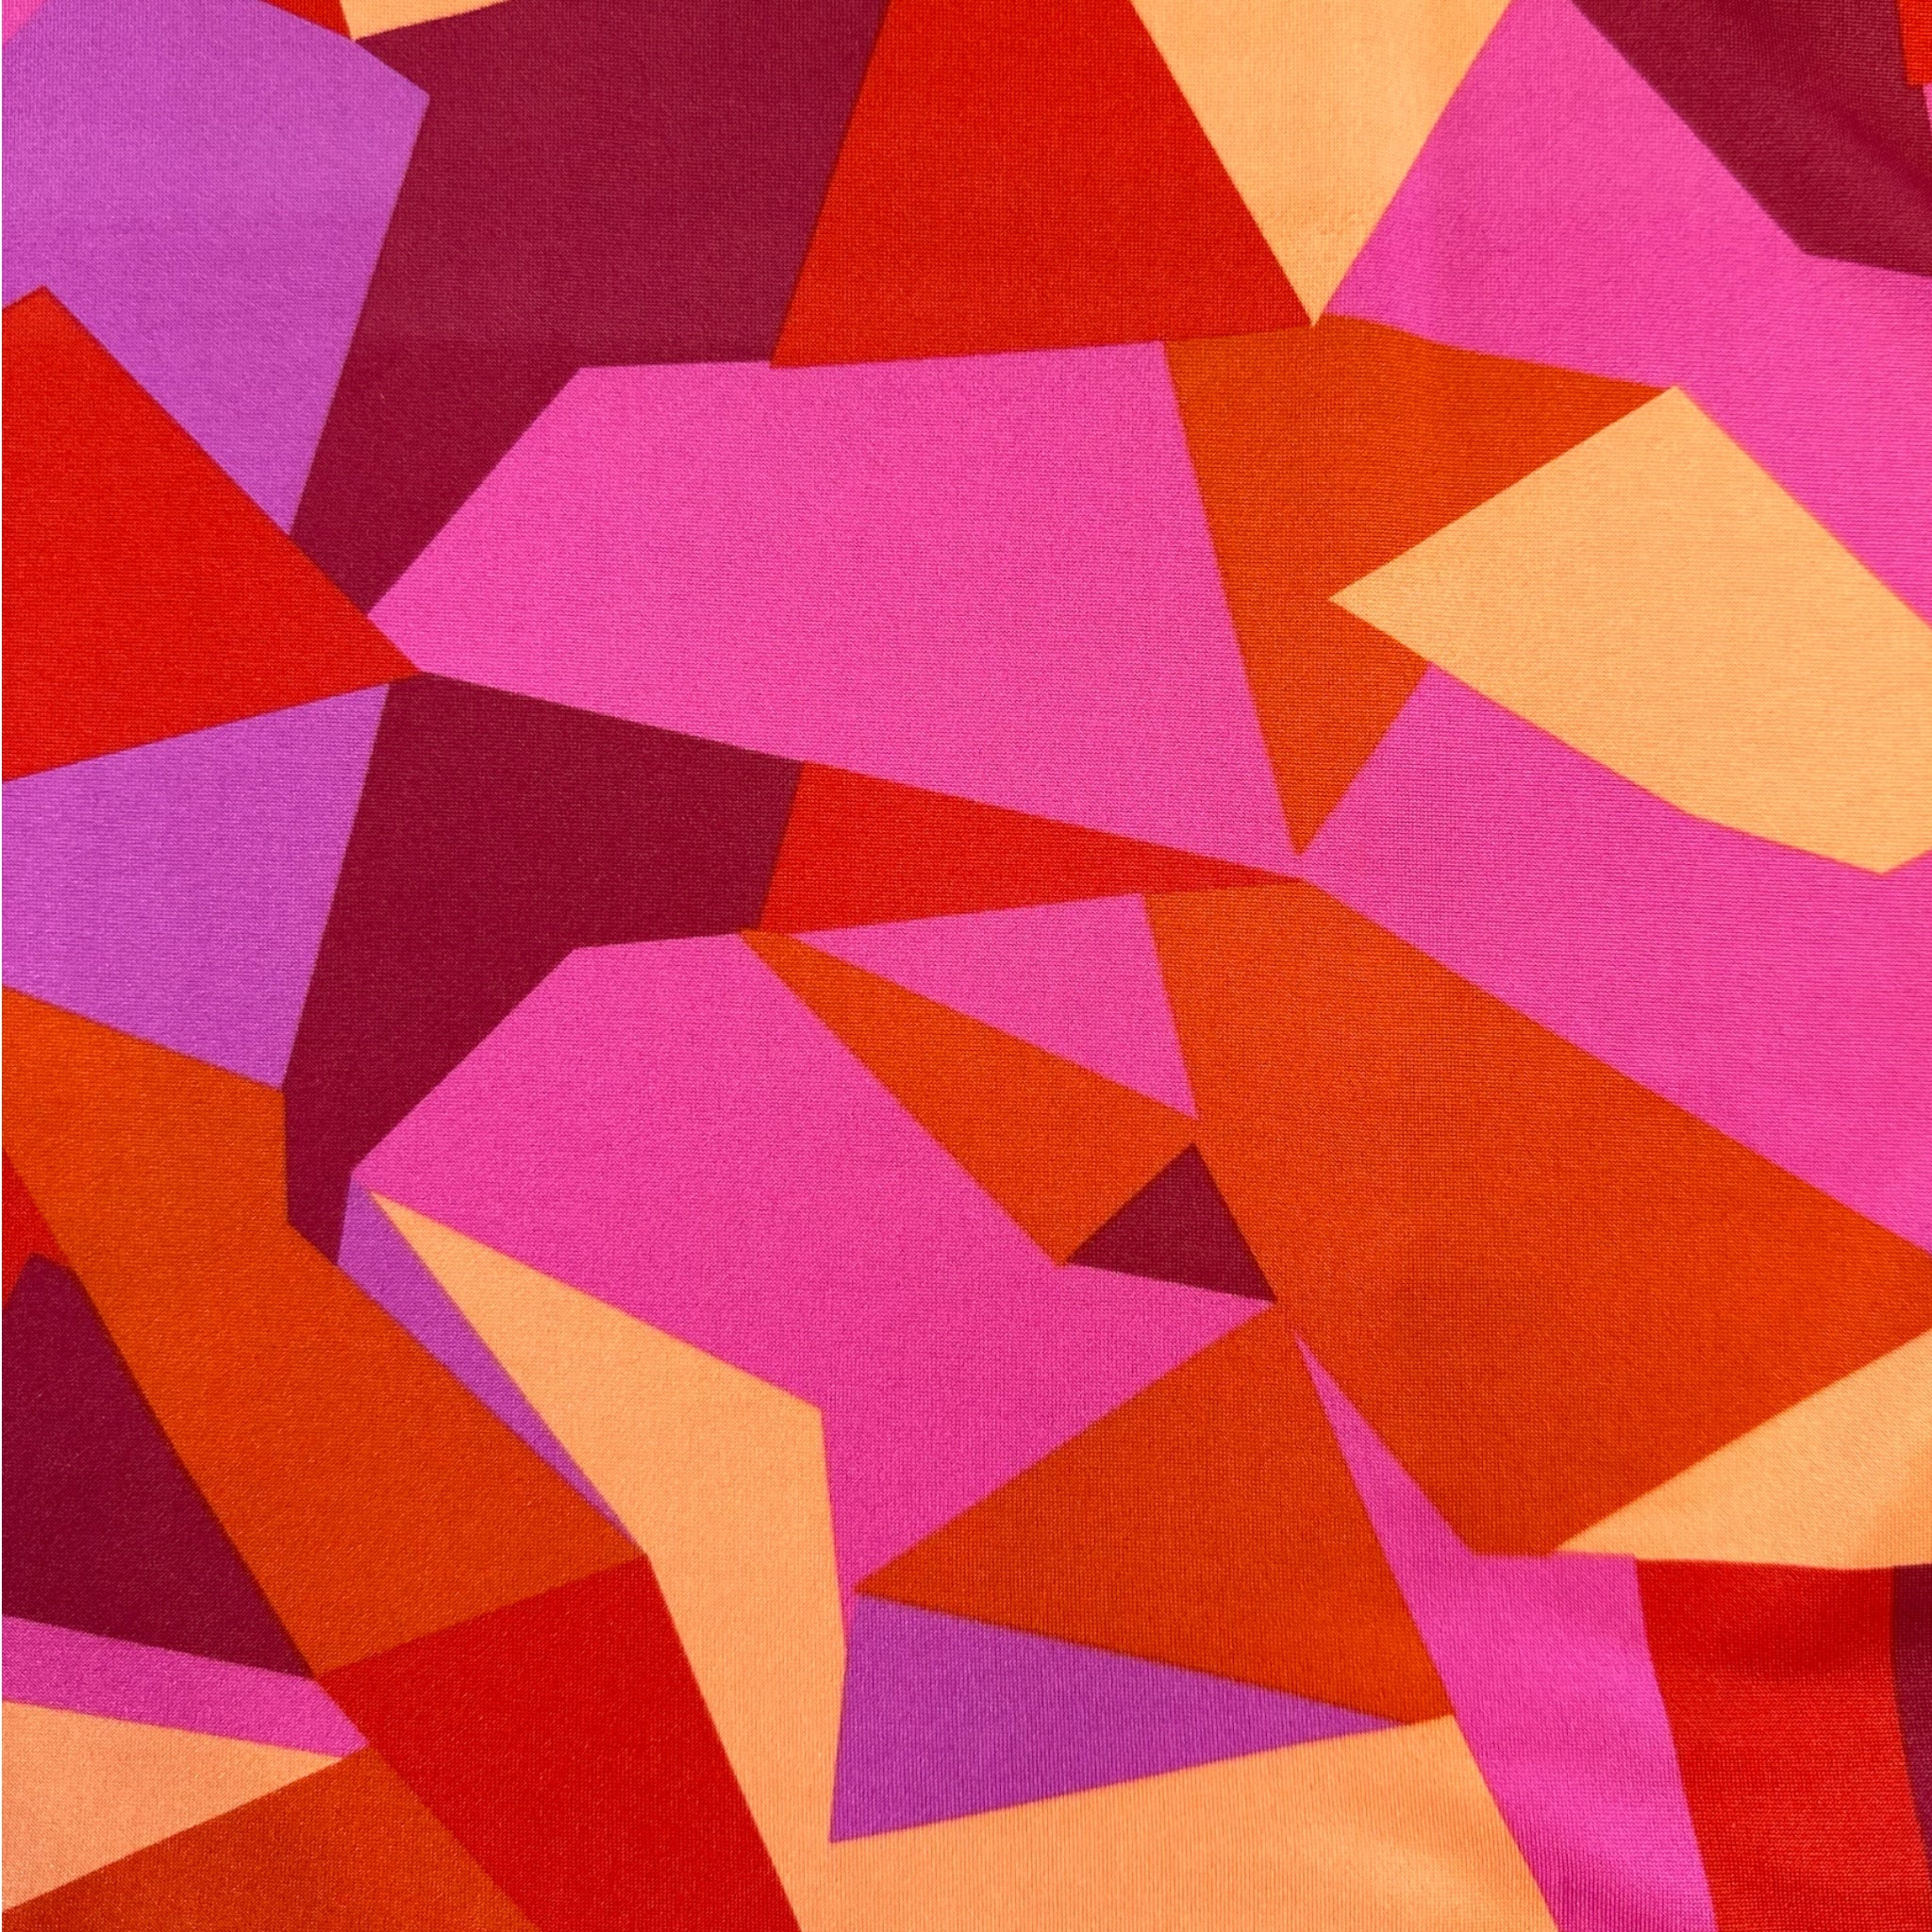 K Design Geometric Print Maxi Dress Pink